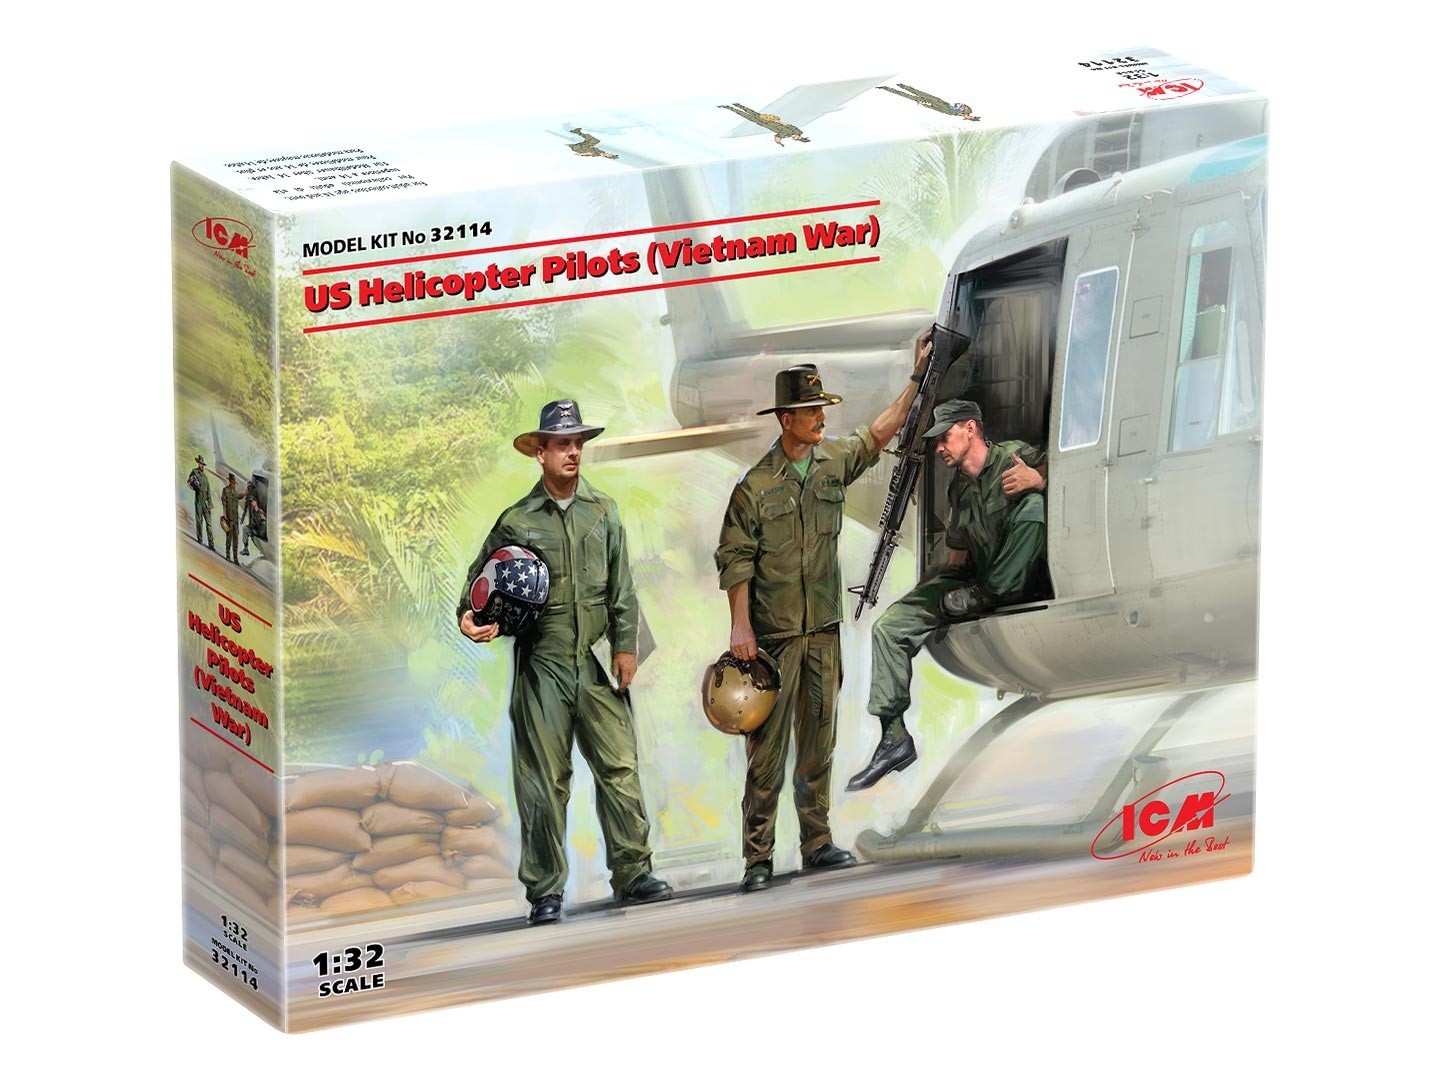 US Helicopter Pilots (Vietnam War)